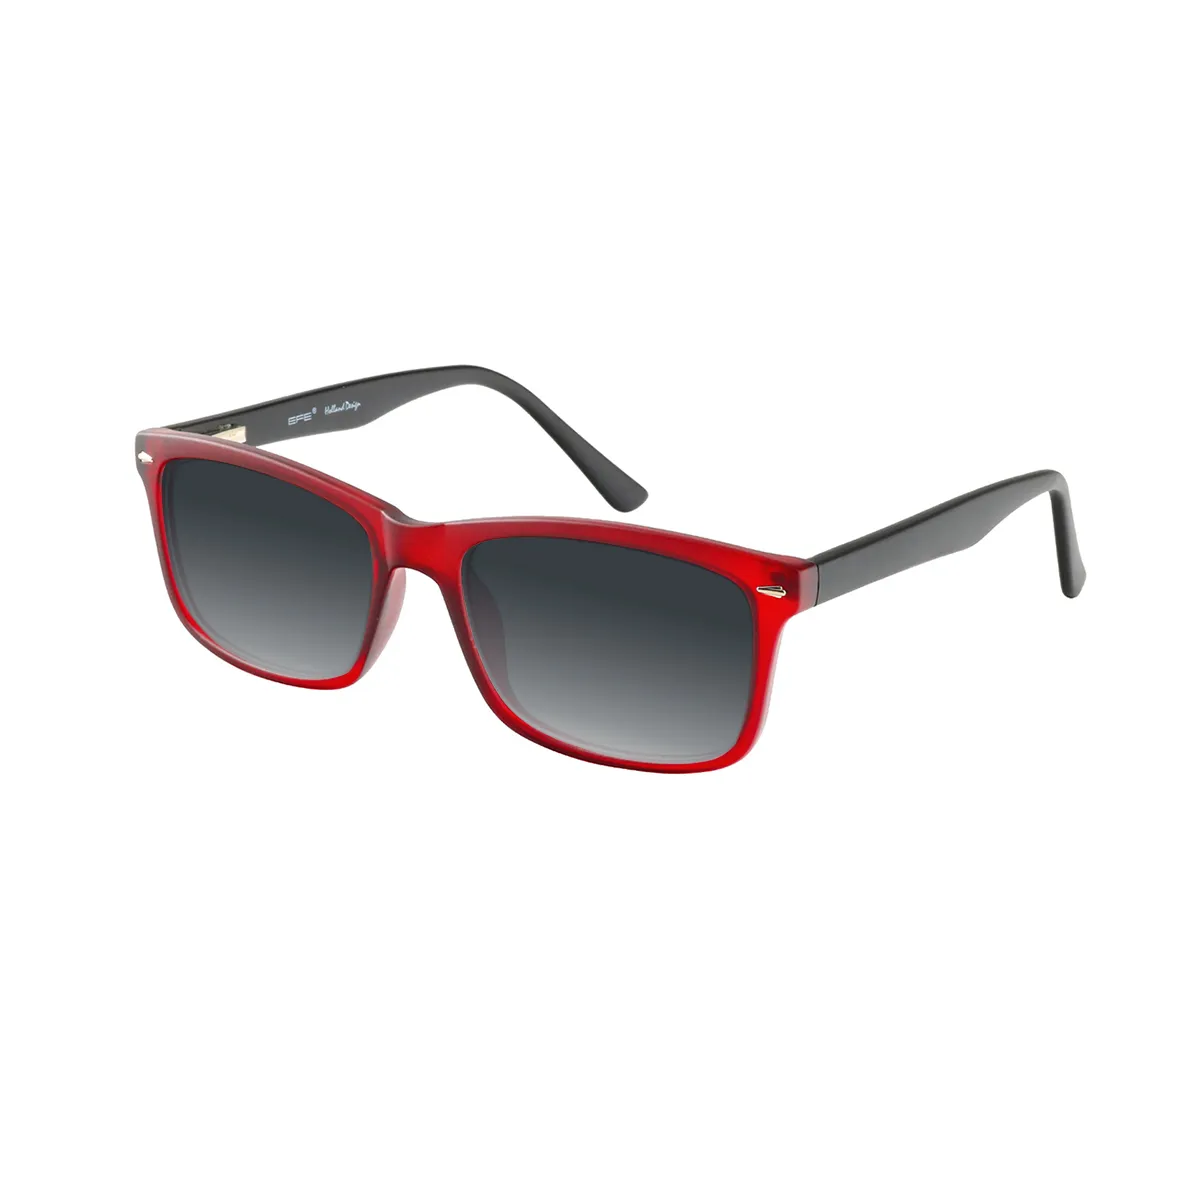 Ryder - Rectangle Wine Sunglasses for Men & Women